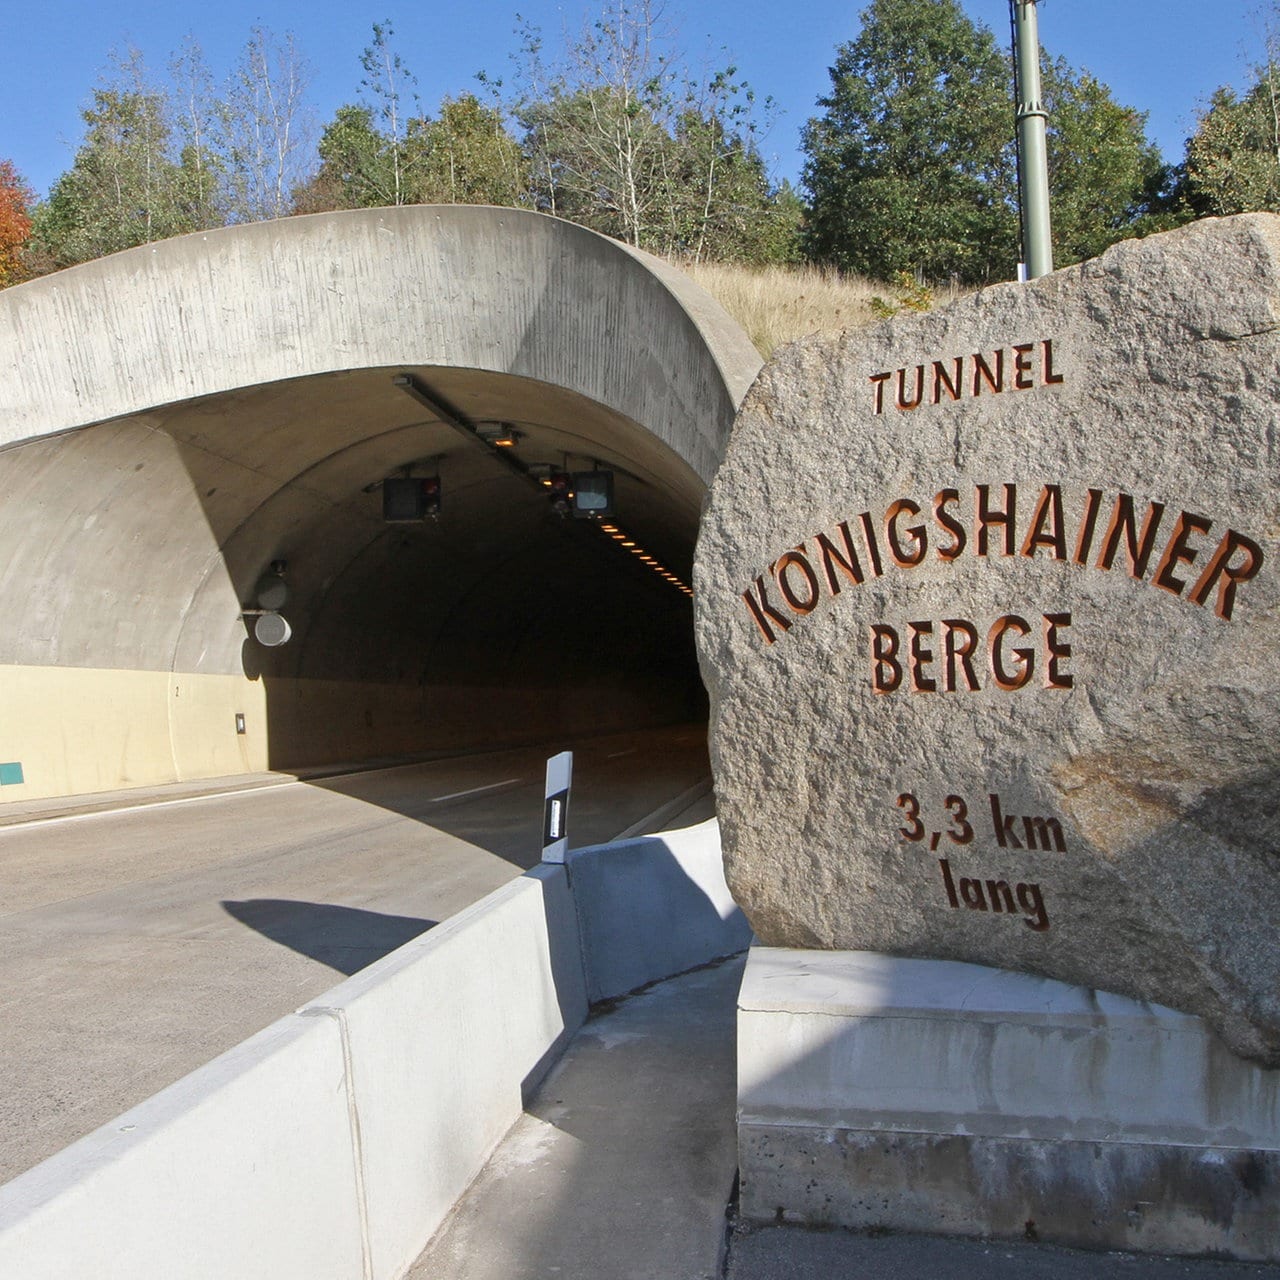 Tunnel Königshainer Berge auf A4: Mehrere Vollsperrungen geplant